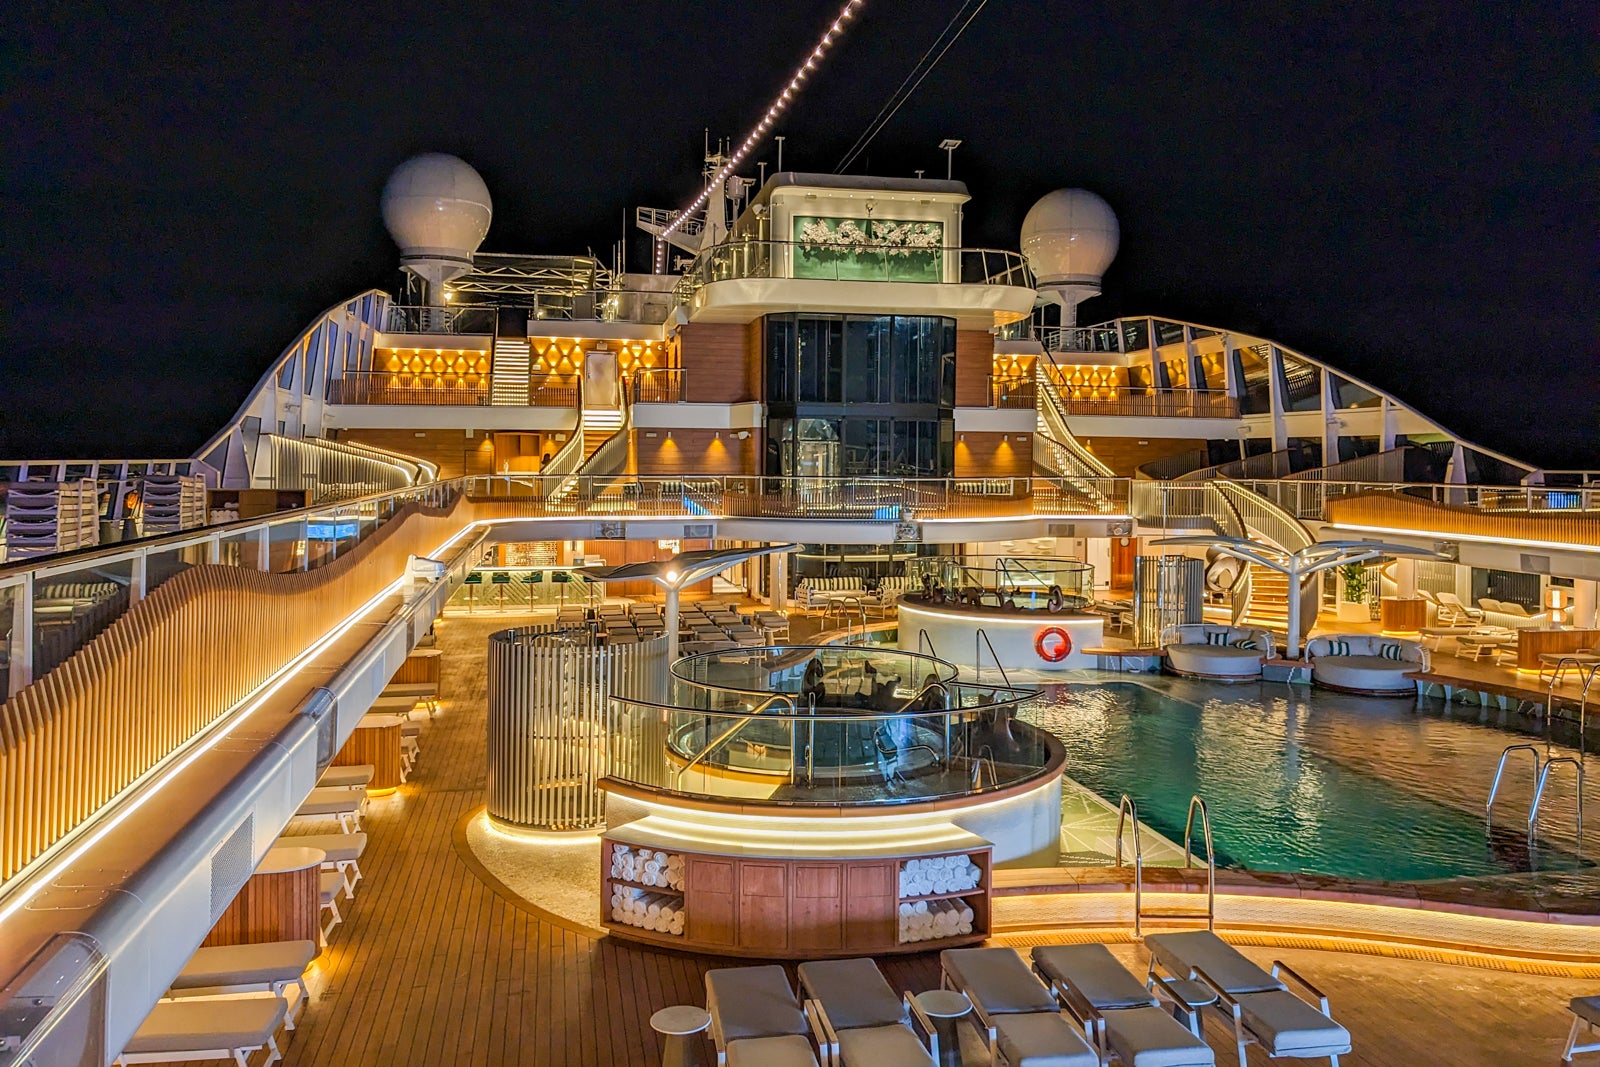 Pool deck on Oceania's Vista. 